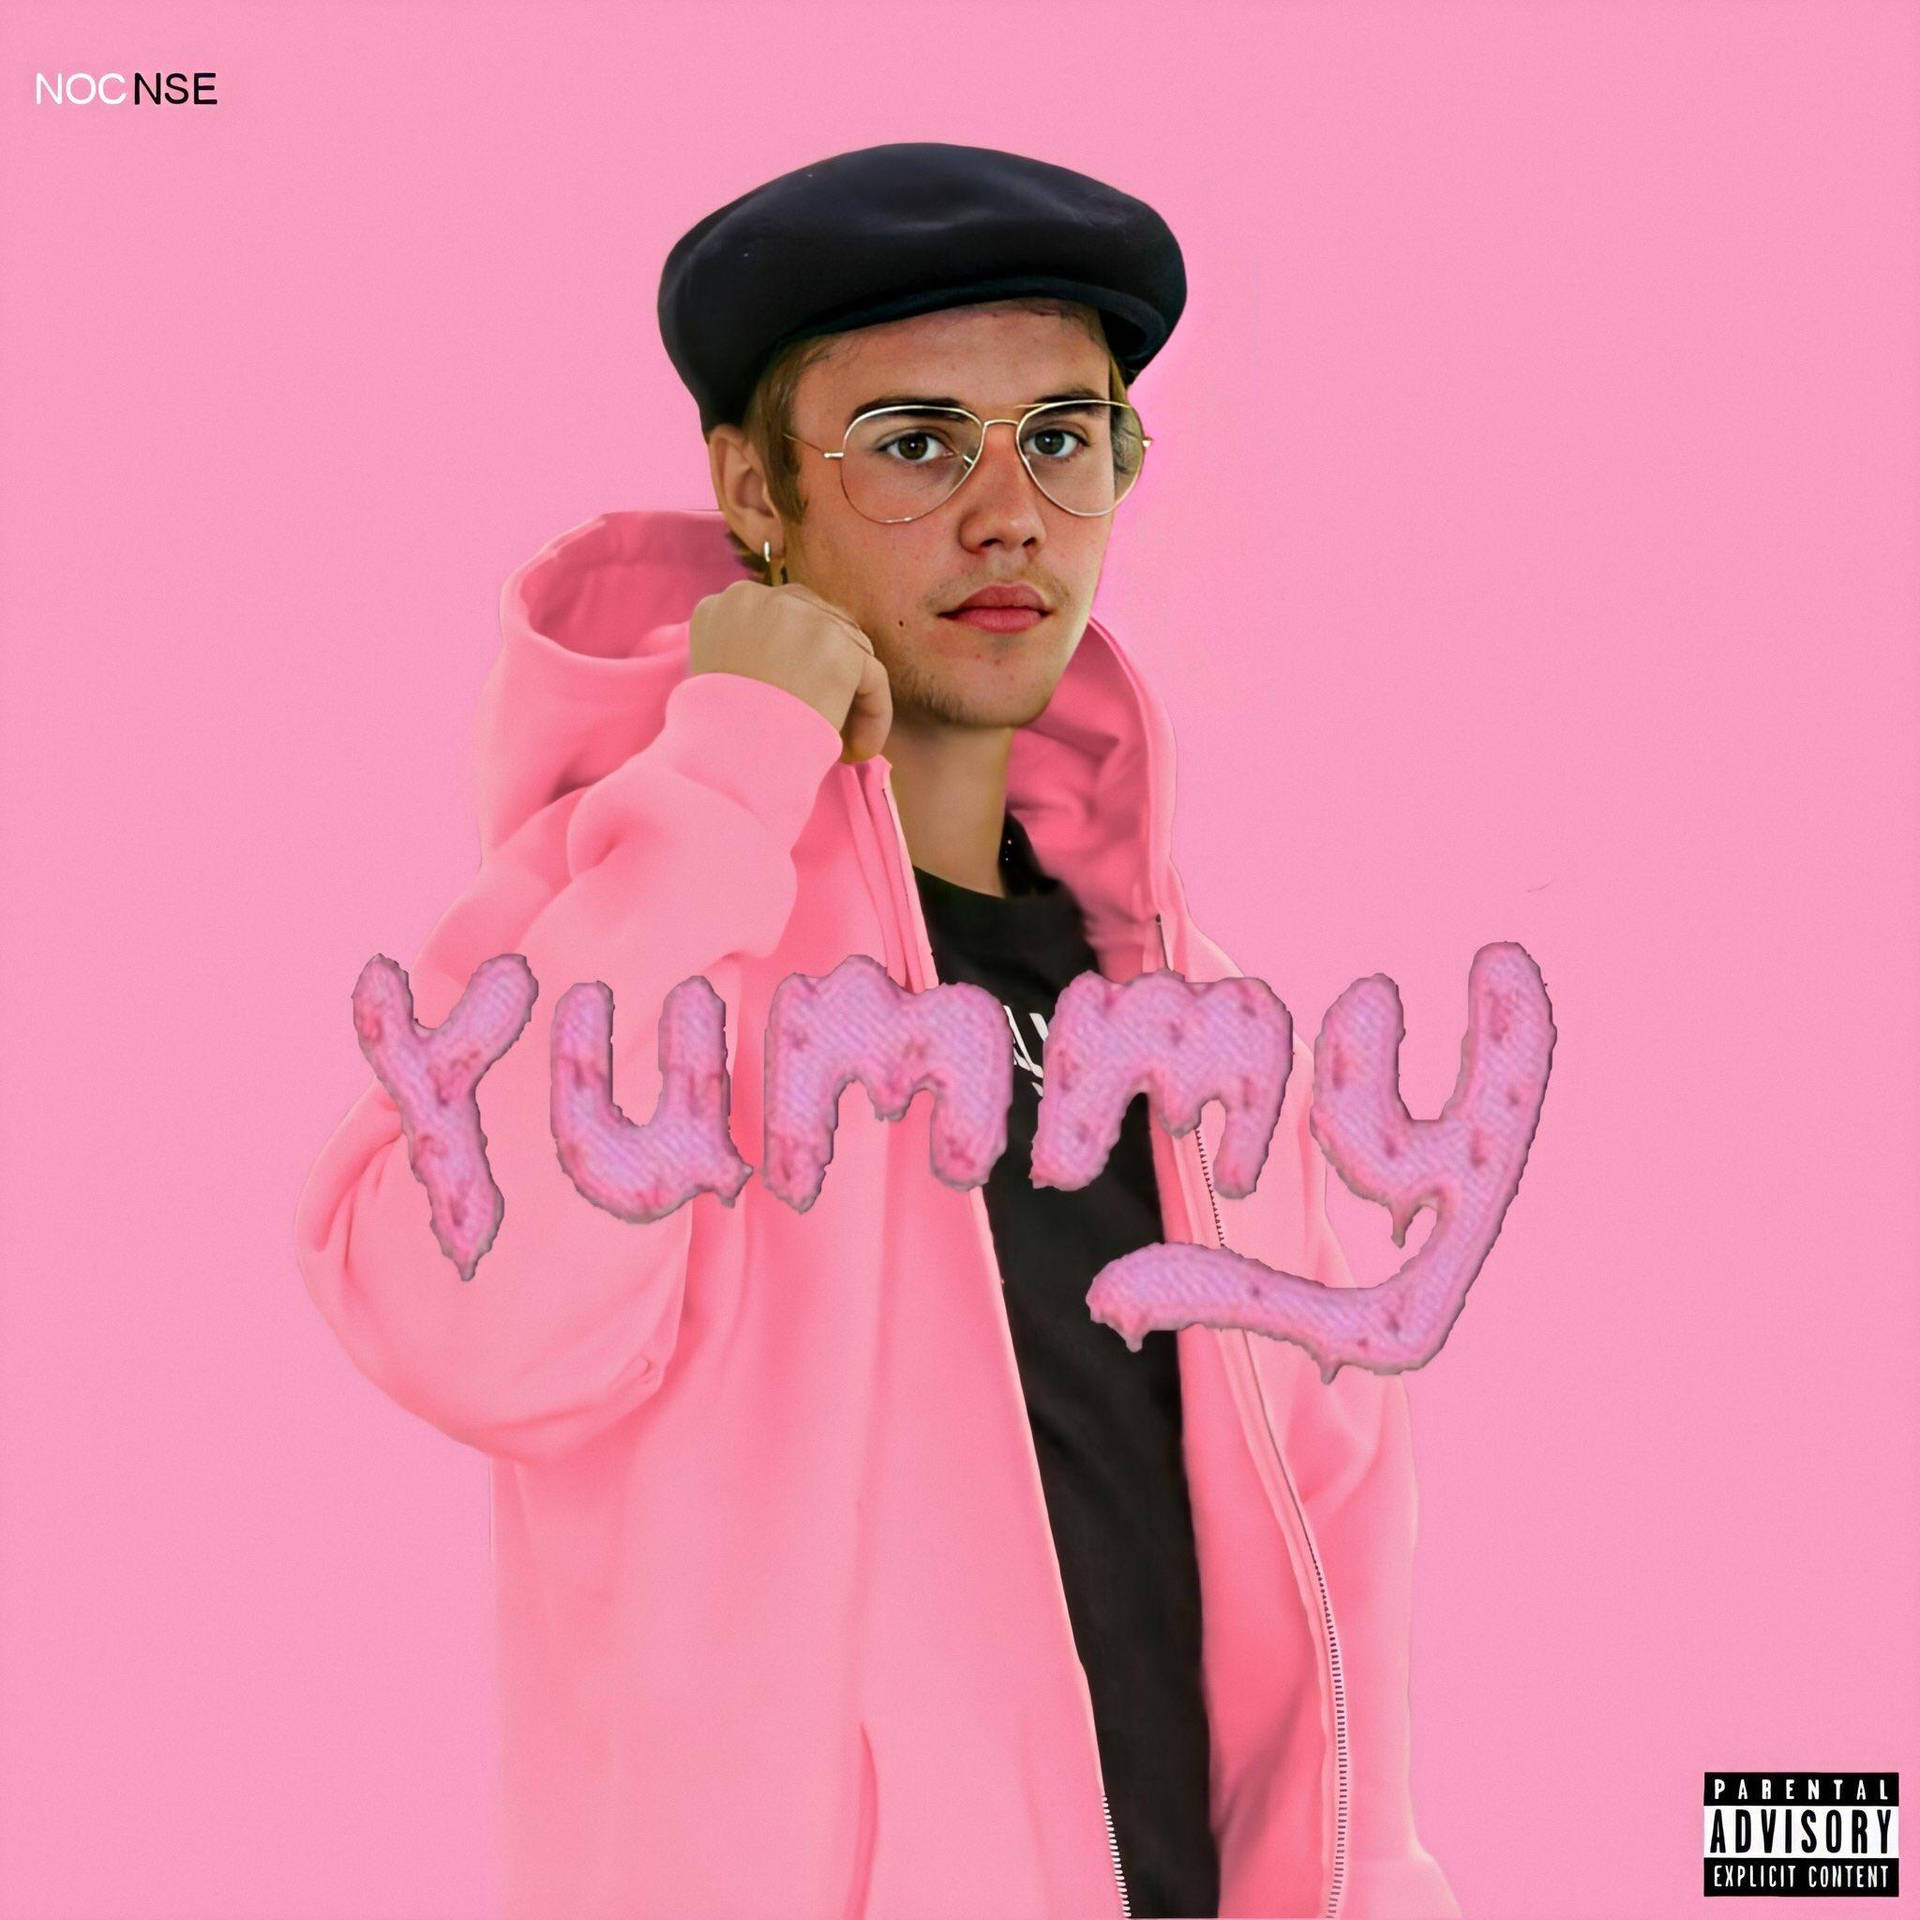 Yummy Justin Bieber In Pink Background